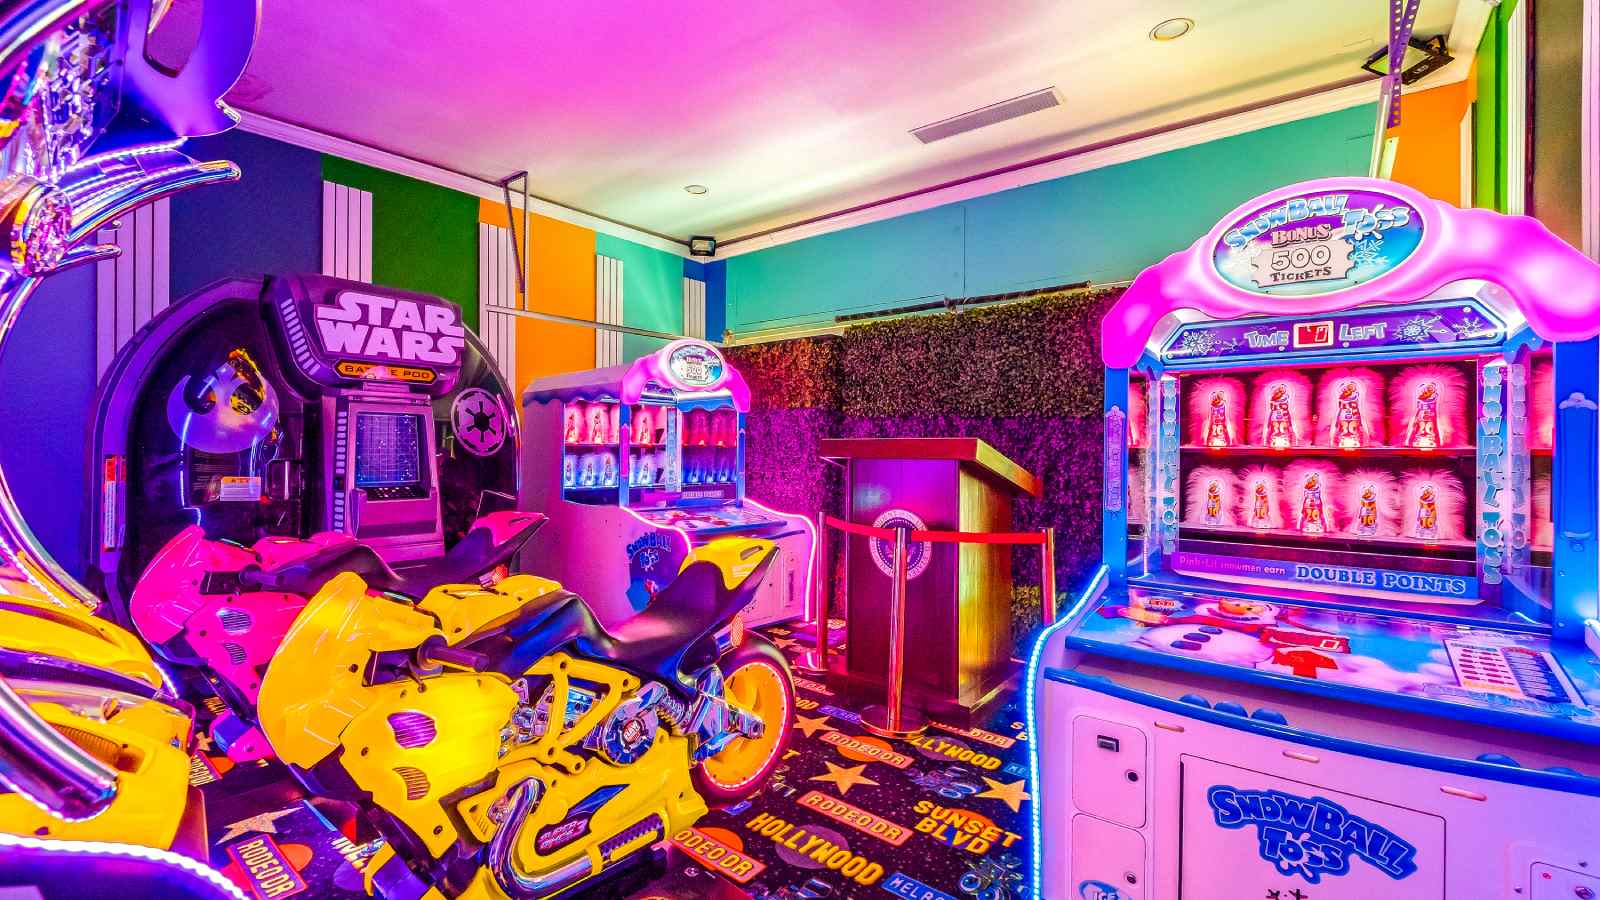 La sala de juegos incorpora múltiples máquinas recreativas para jugar a videojuegos, que combinan con una iluminación multicolor para darle a la habitación una estética retro. - imagen 9